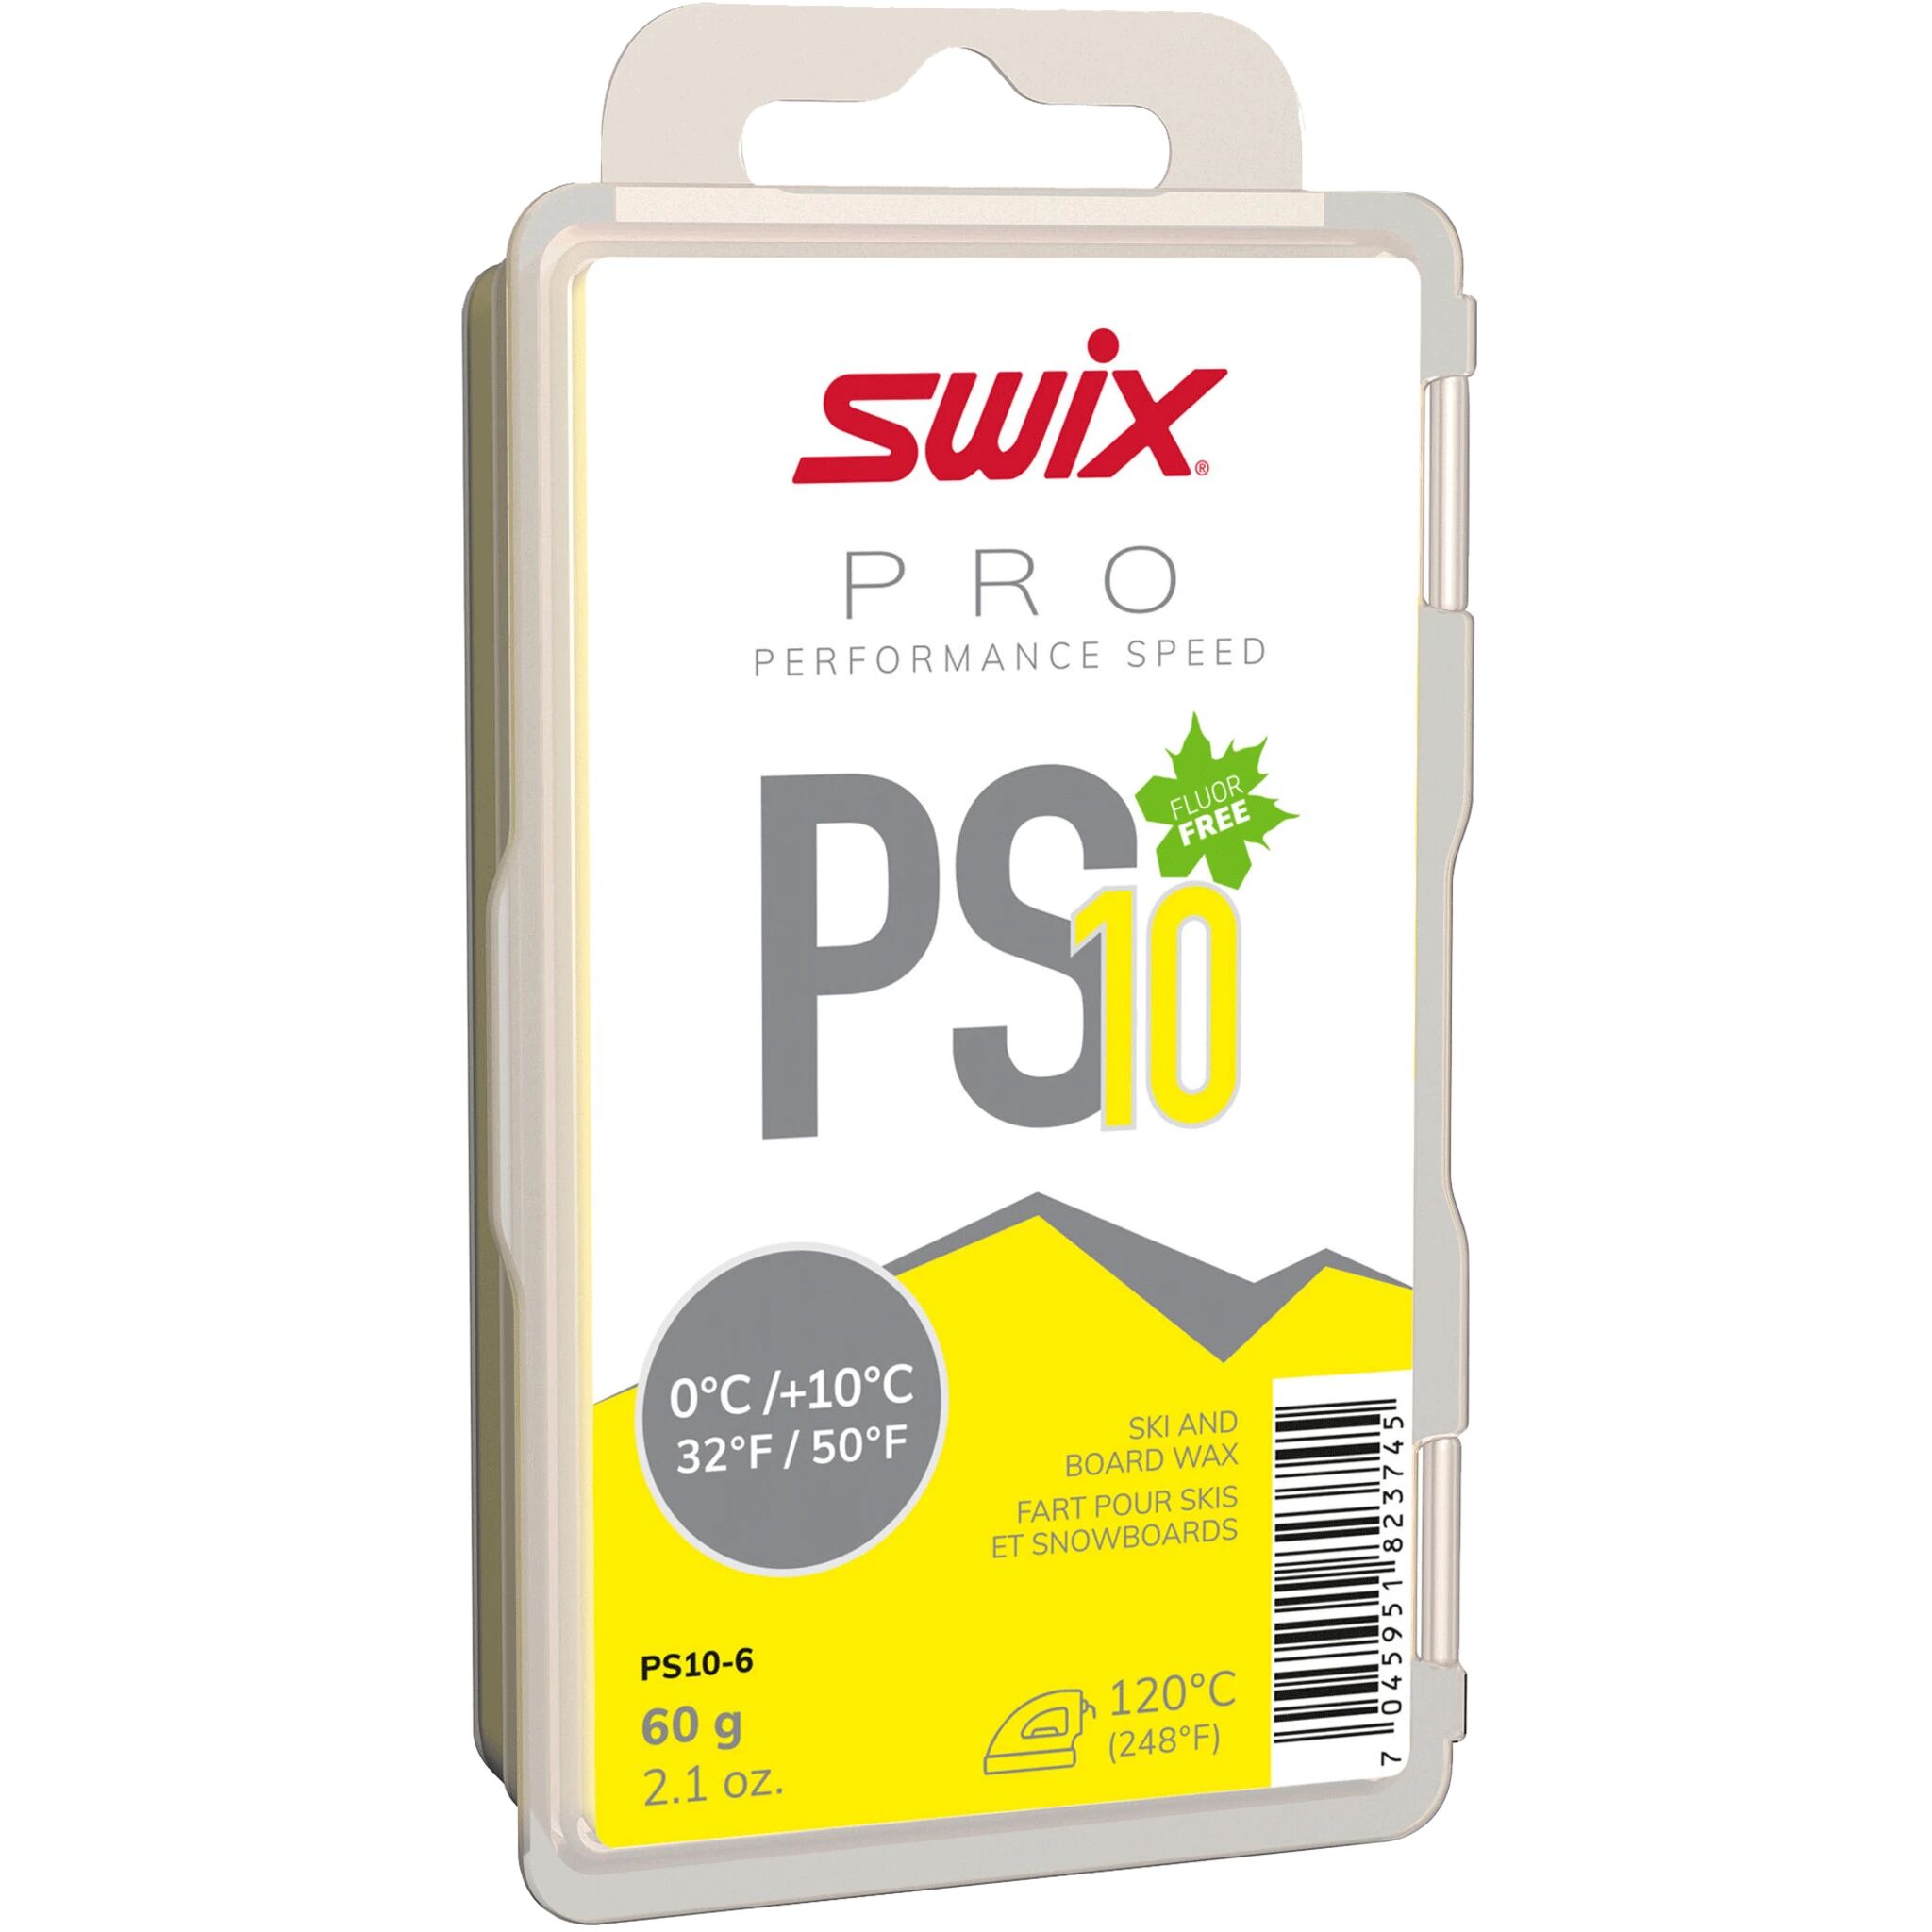 Swix PS10 Yellow 0°C/+10°C 60g 20/21, glider 60g STD